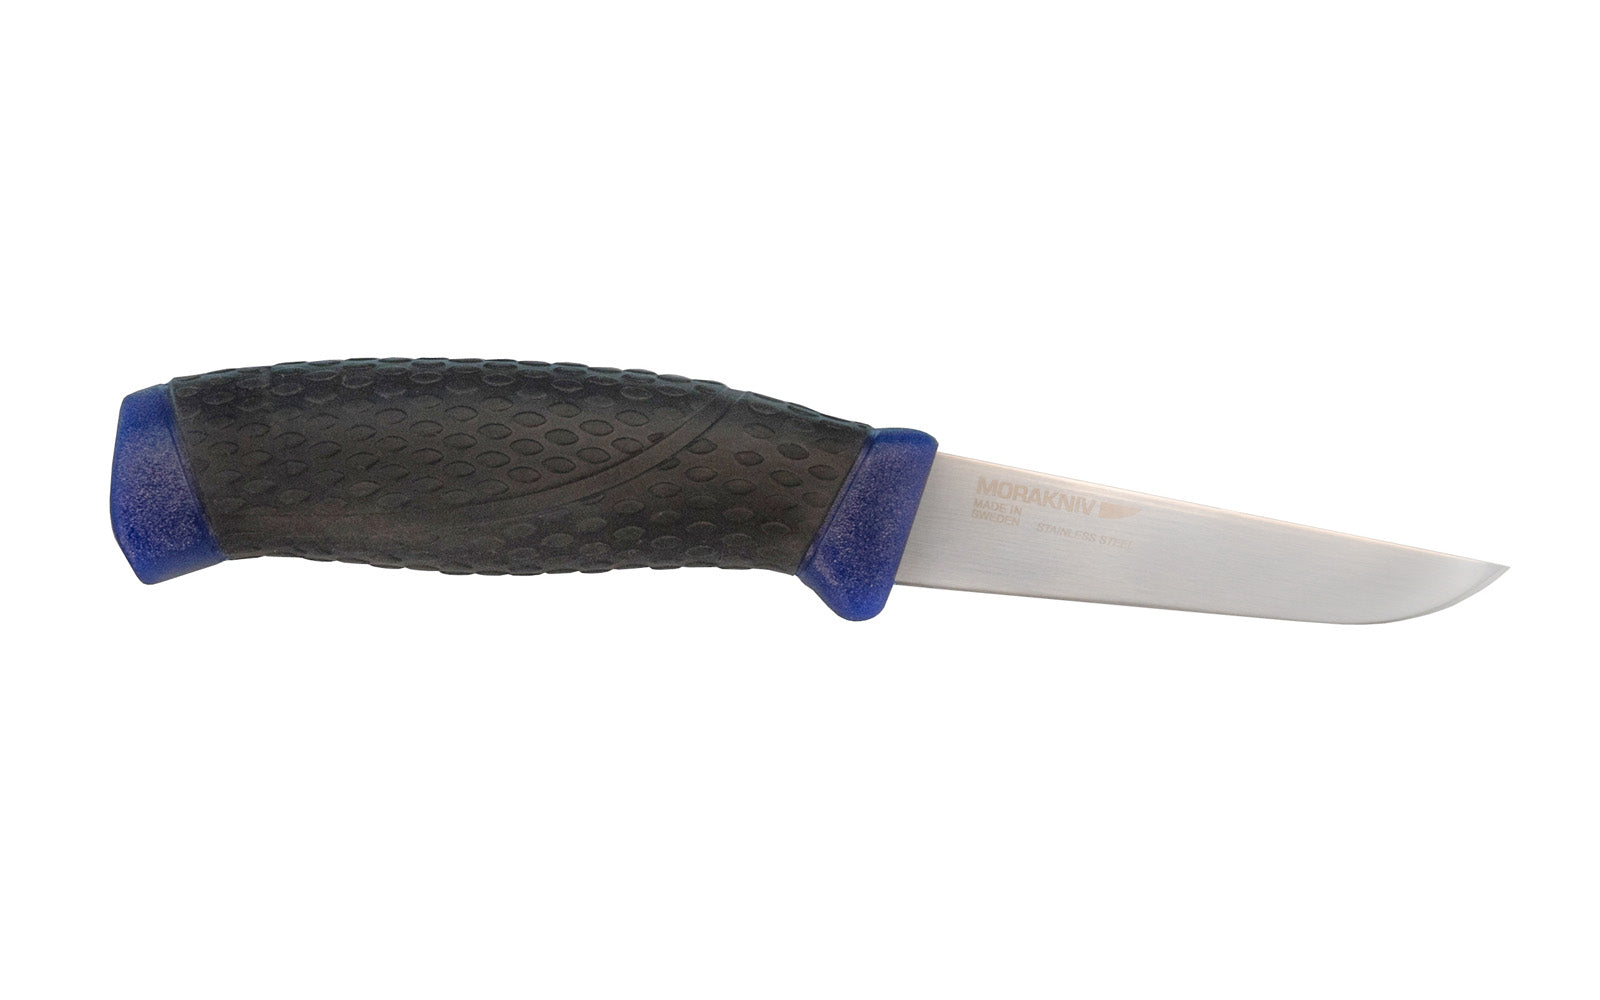 Mora Stainless Steel Flex Knife. 3-1/2